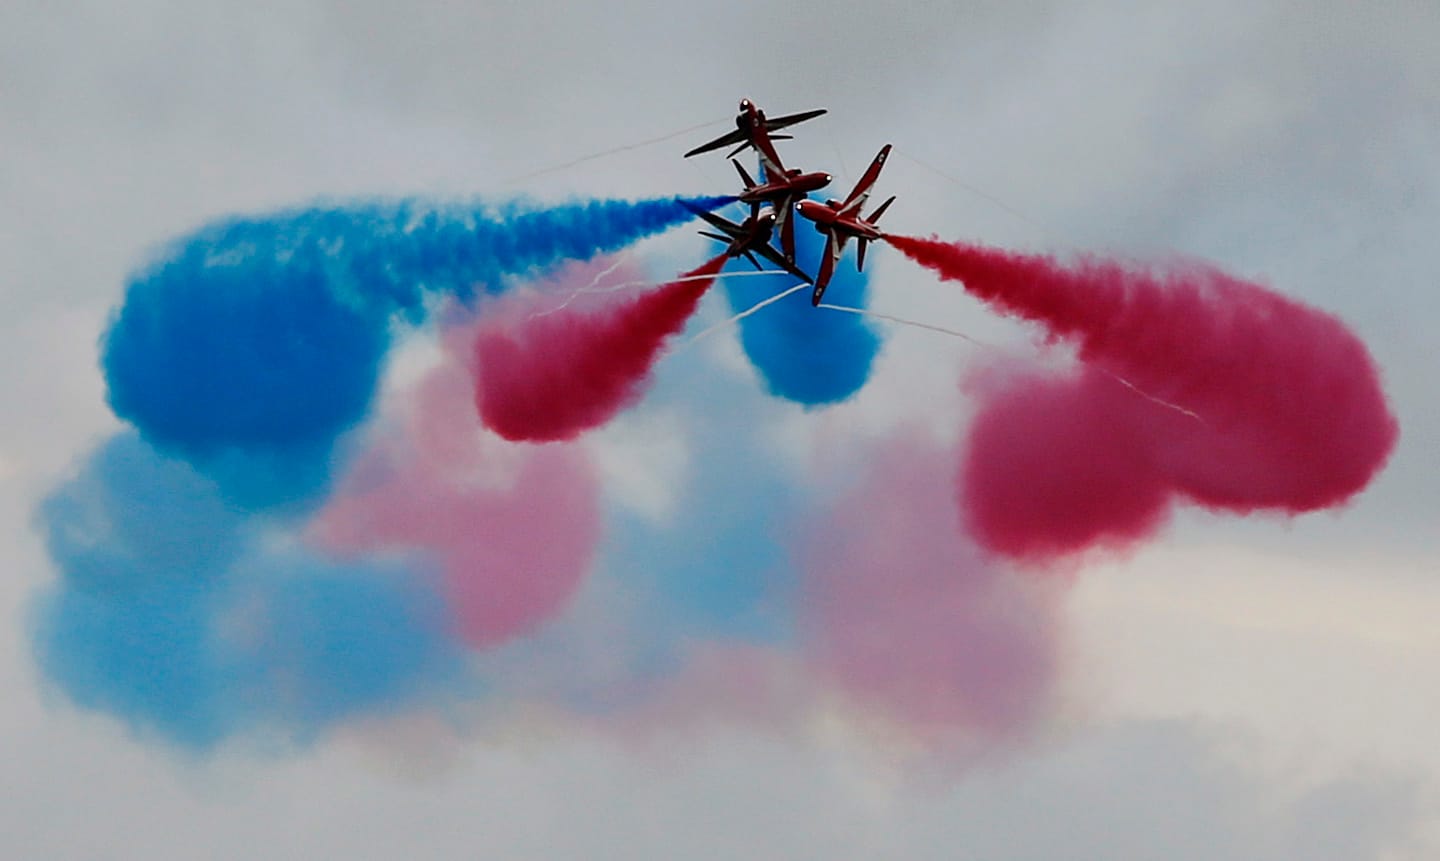 Der Renntag in Silverstone beginnt rasant, allerdings in der Luft: Die Red Arrows, das Kunstflugteam der britischen Luftwaffe, zeigen ihre Künste.